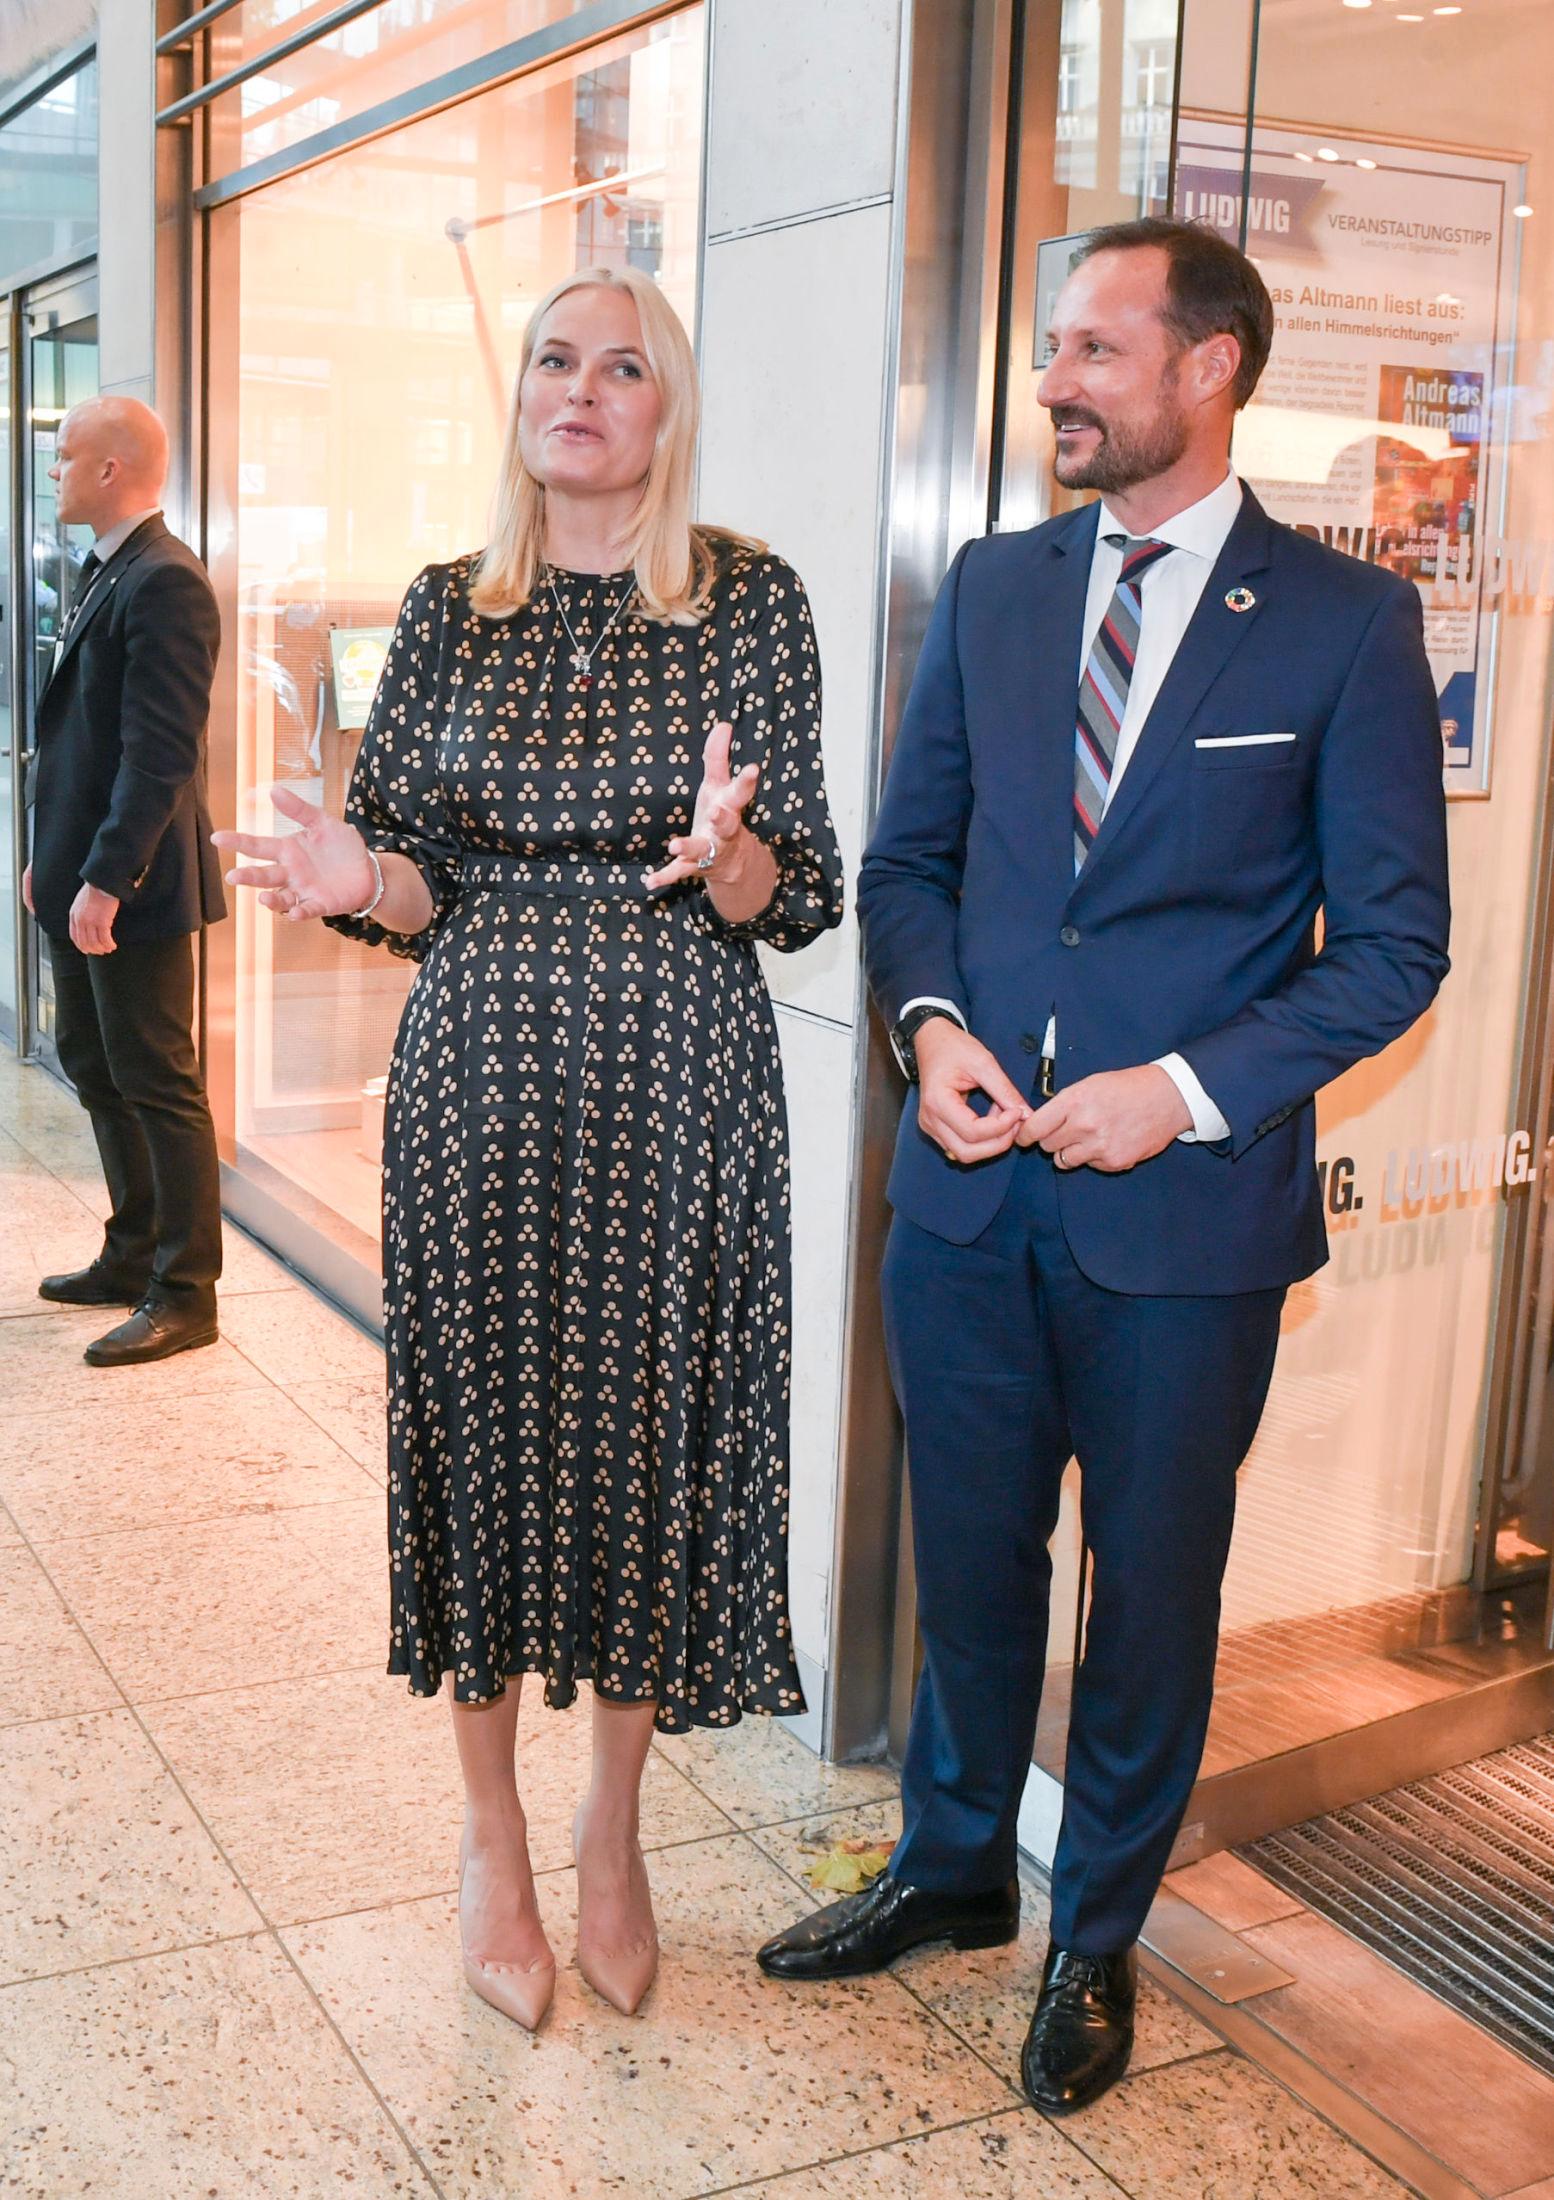 PRIKKEKJOLE: Mette-Marit i norsk kjole med prikker. Haakon stilte i blå dress. Foto: Jens Kalaene/DPA/Zentralbild.